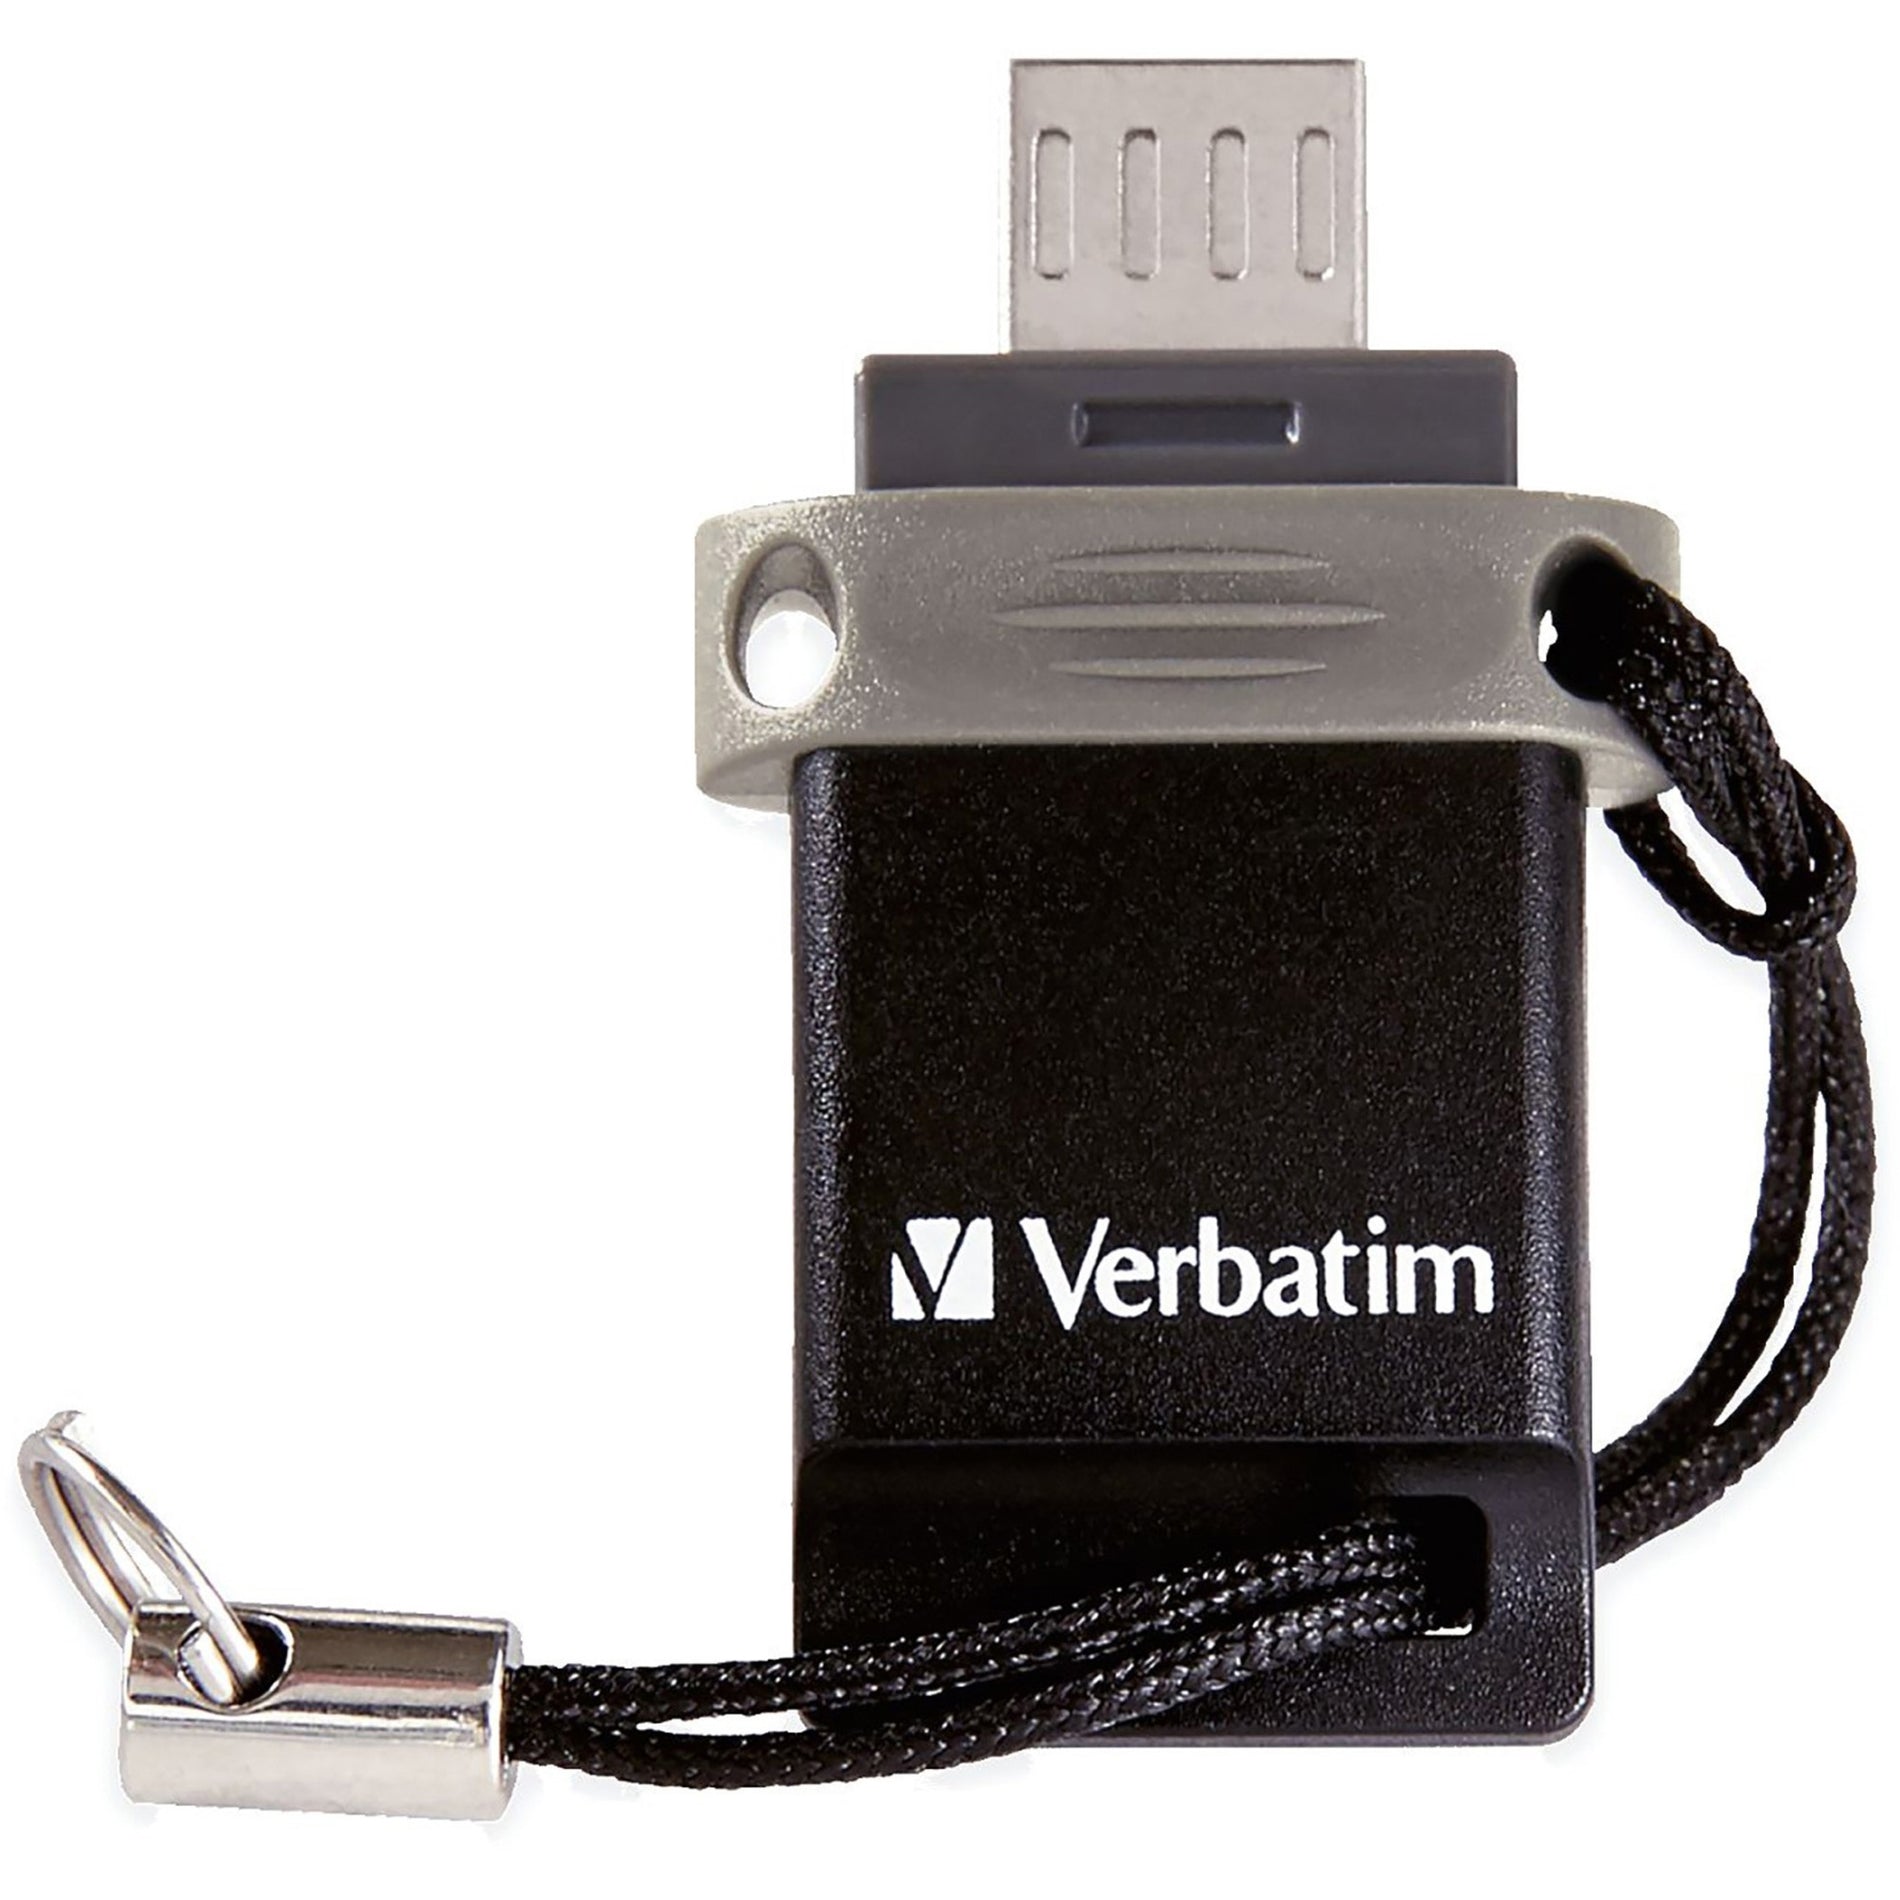 فيرباتيم ٩٩١٤٠ تخزين 'n' انتقل محرك فلاش USB مزدوج، ٦٤ جيجابايت، أسود/رمادي اسم العلامة التجارية: فيرباتيم